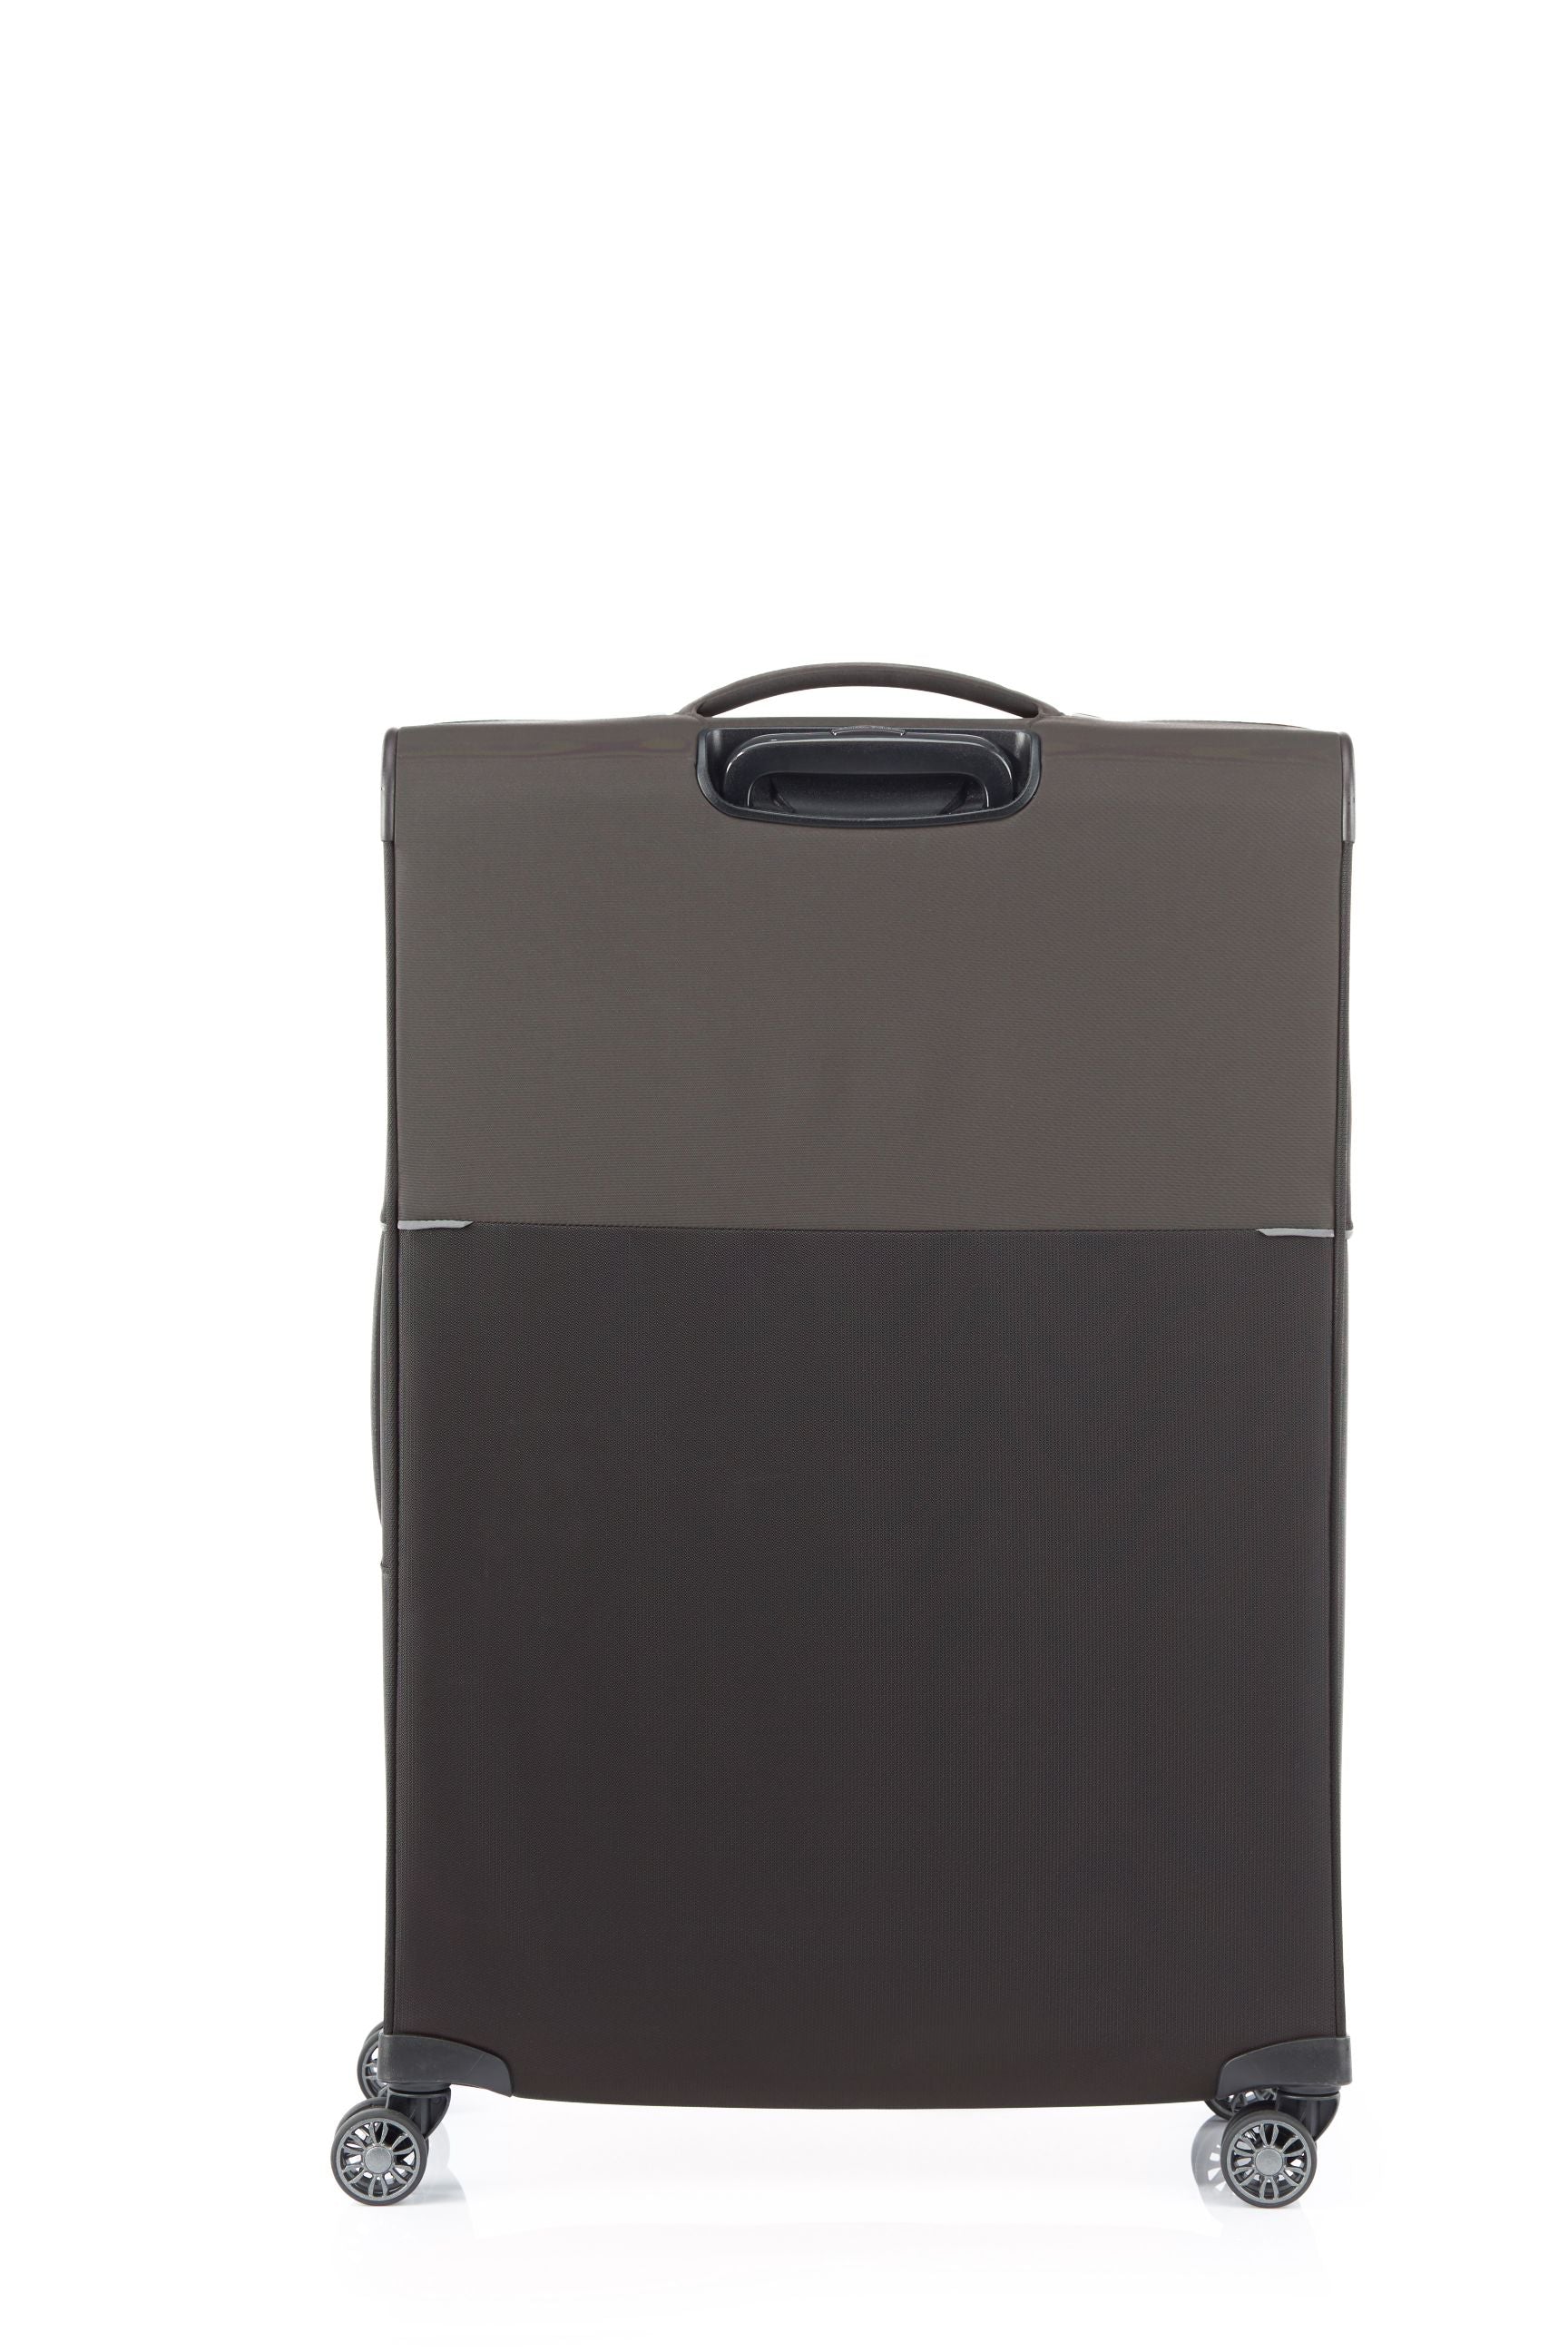 Samsonite 73HR 78cm Large Suitcase - Platinum Grey-4